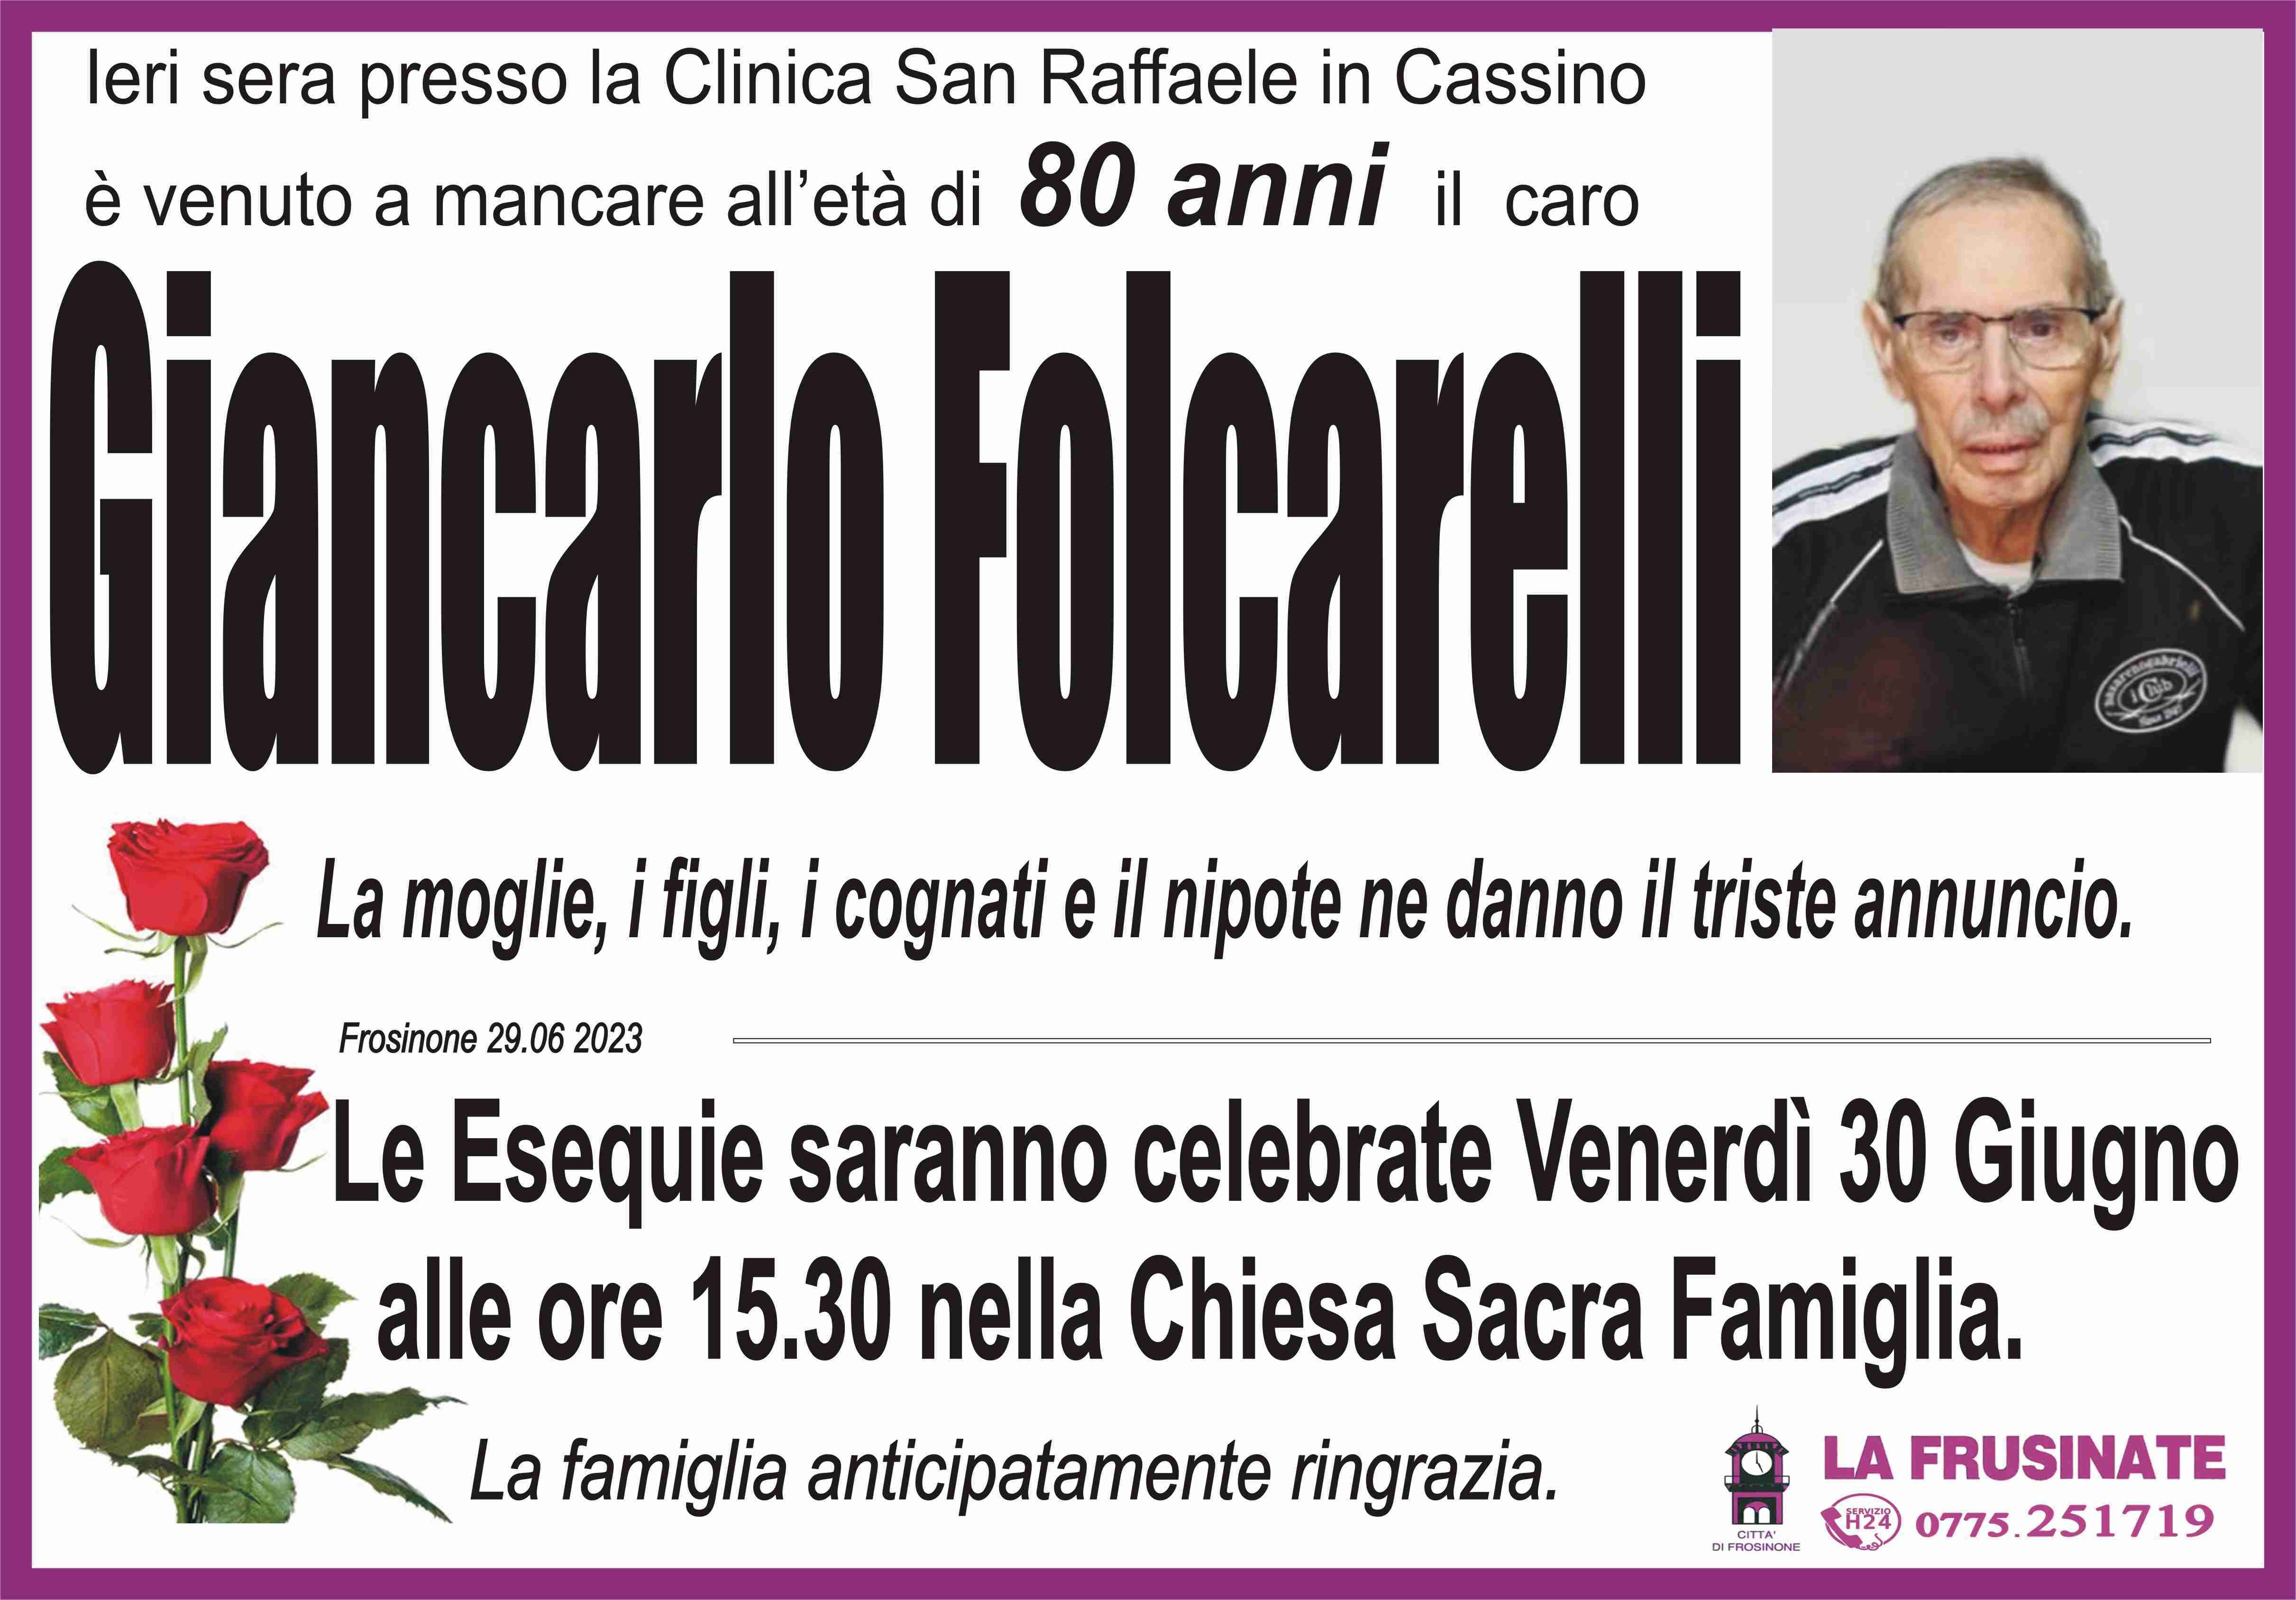 Giancarlo Folcarelli